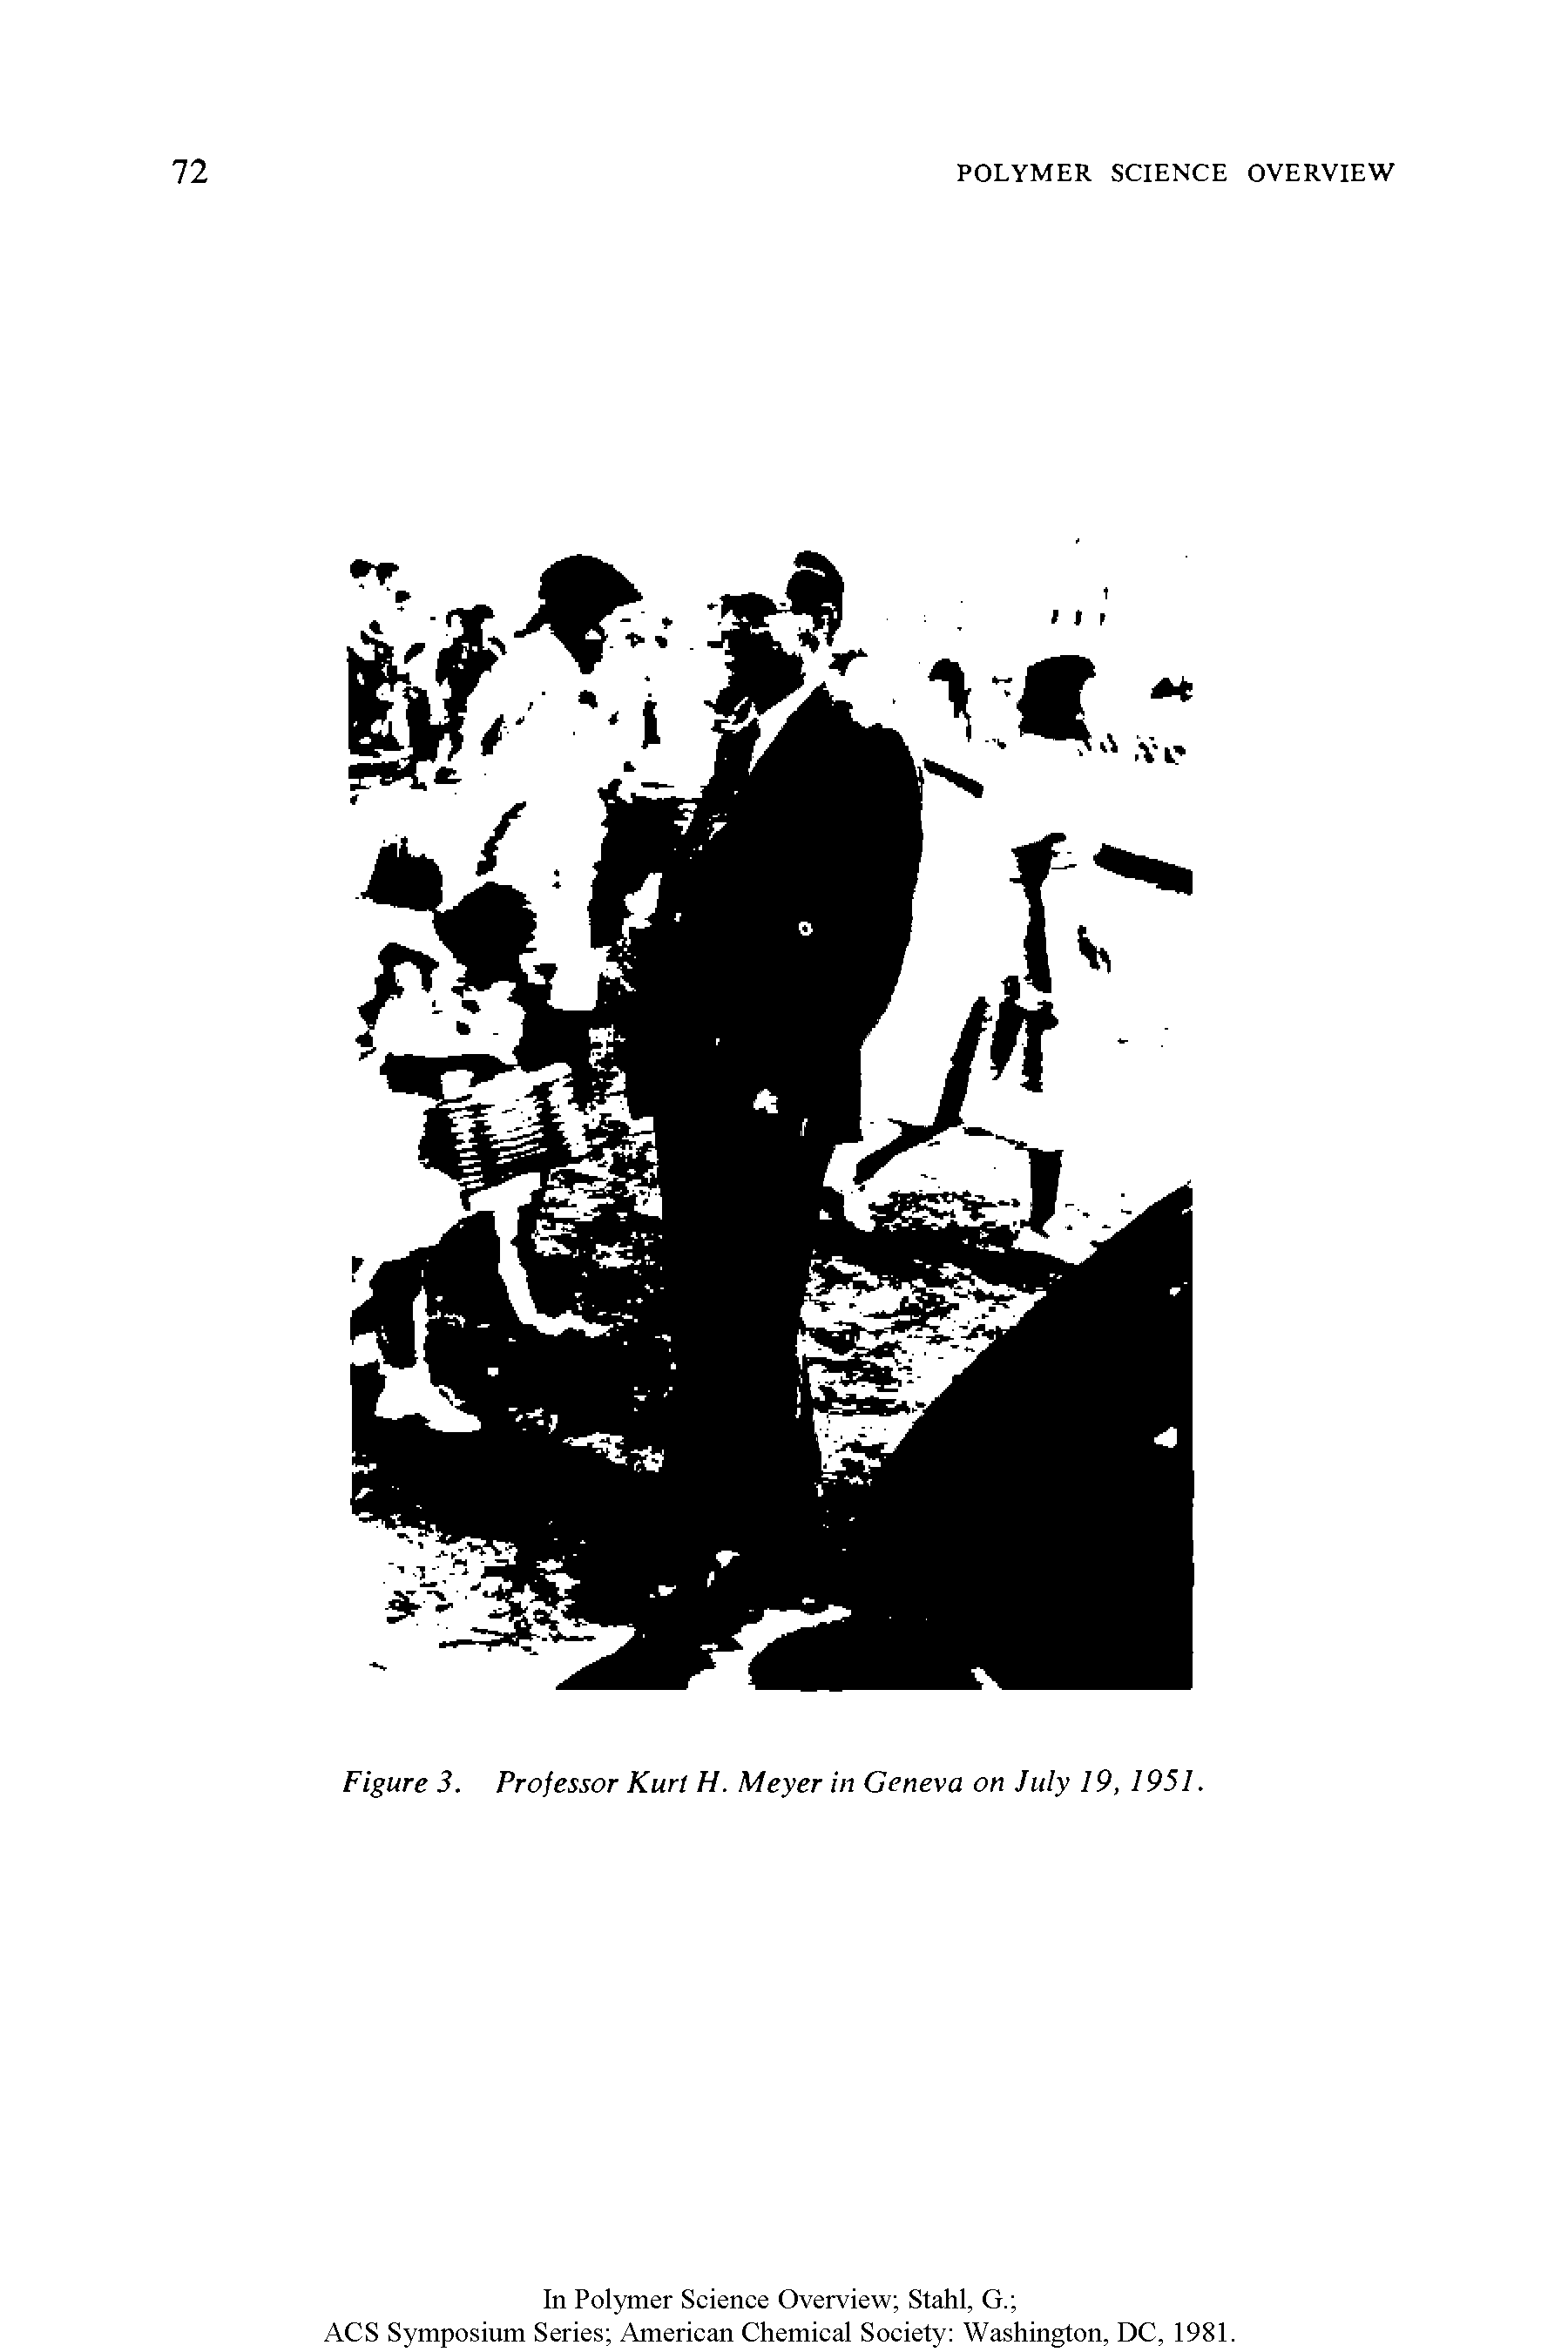 Figure 3. Professor Kurt H. Meyer in Geneva on July 19, 1951.